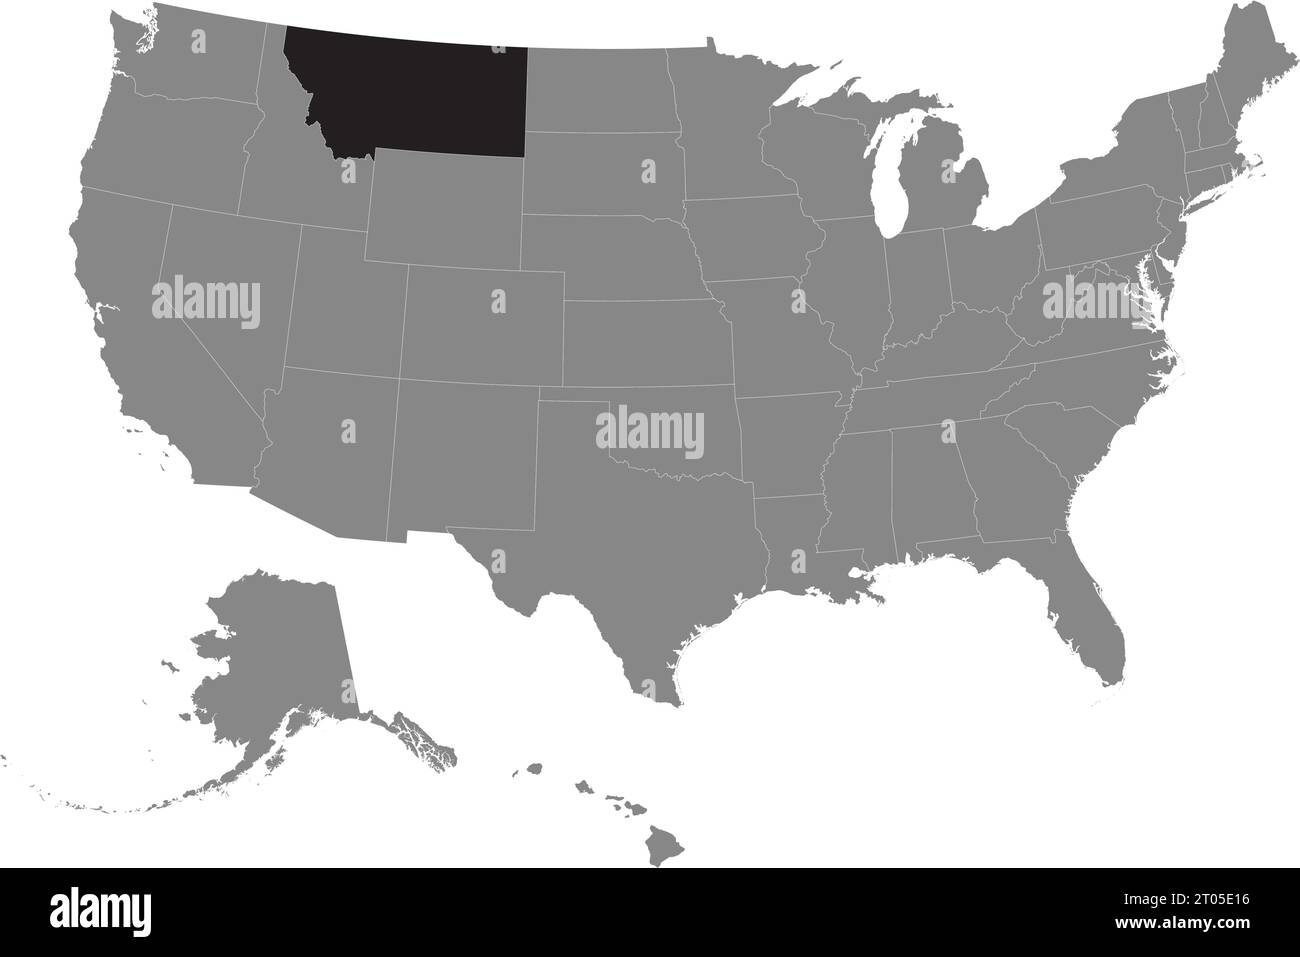 Schwarze CMYK-Bundeskarte von MONTANA in detaillierter grauer, leerer politischer Karte der Vereinigten Staaten von Amerika auf transparentem Hintergrund Stock Vektor